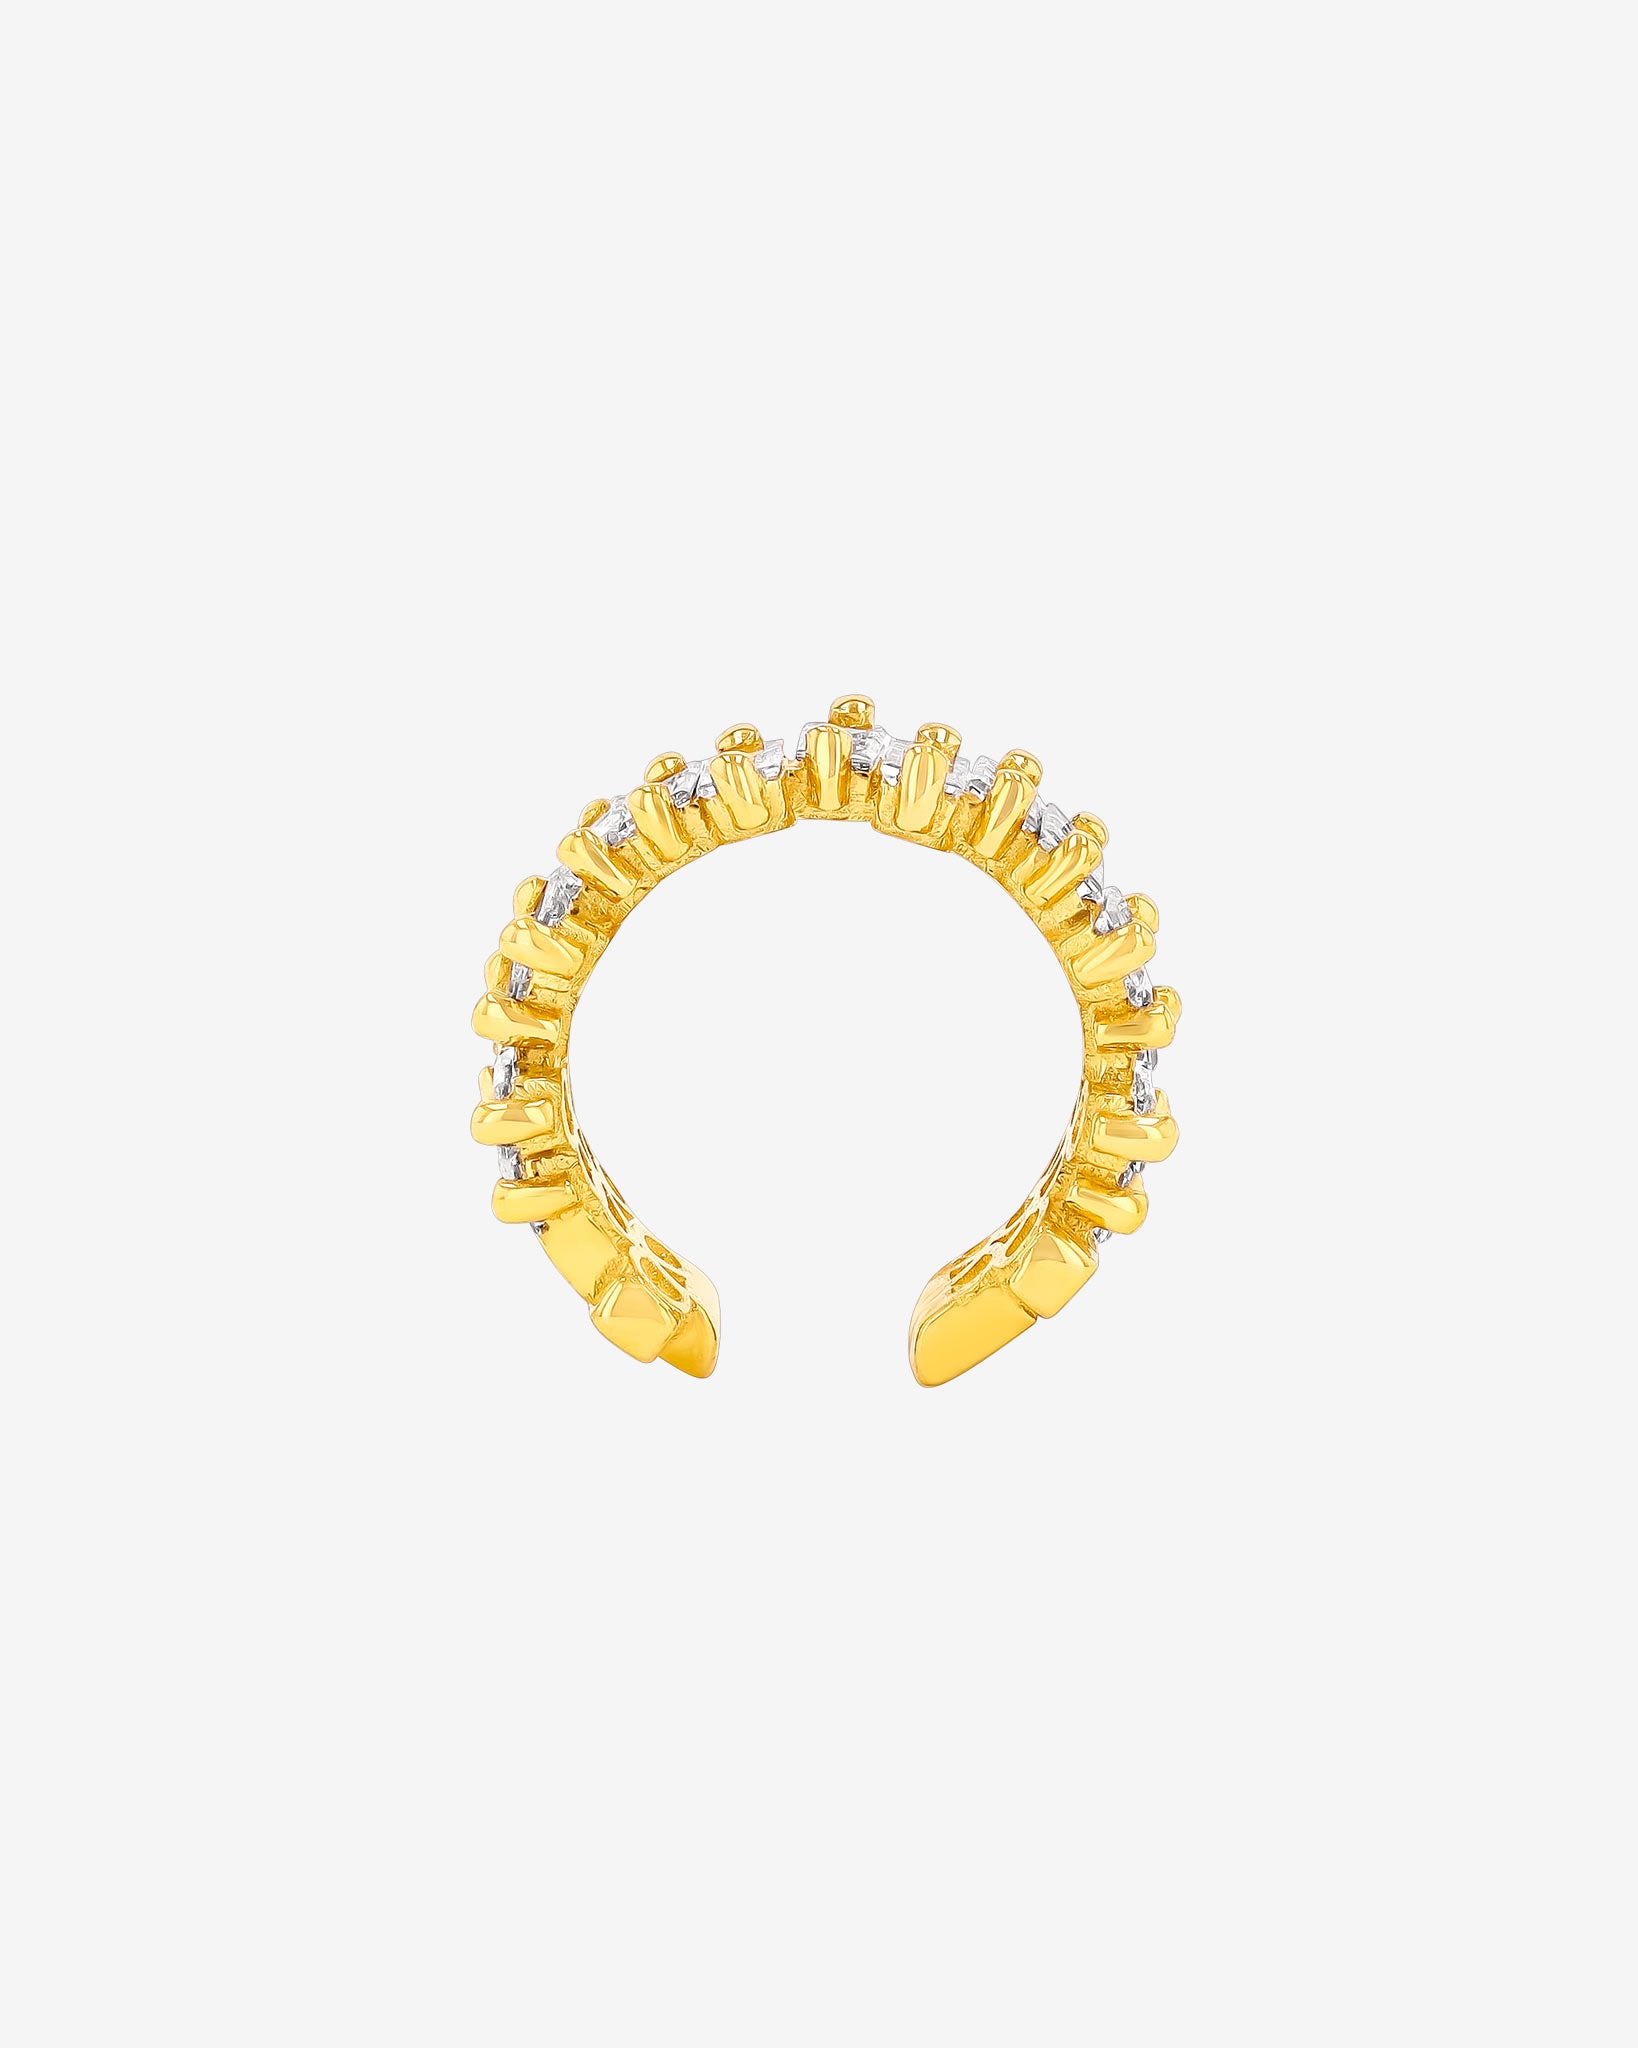 Suzanne Kalan Classic Diamond Ear Cuff in 18k yellow gold